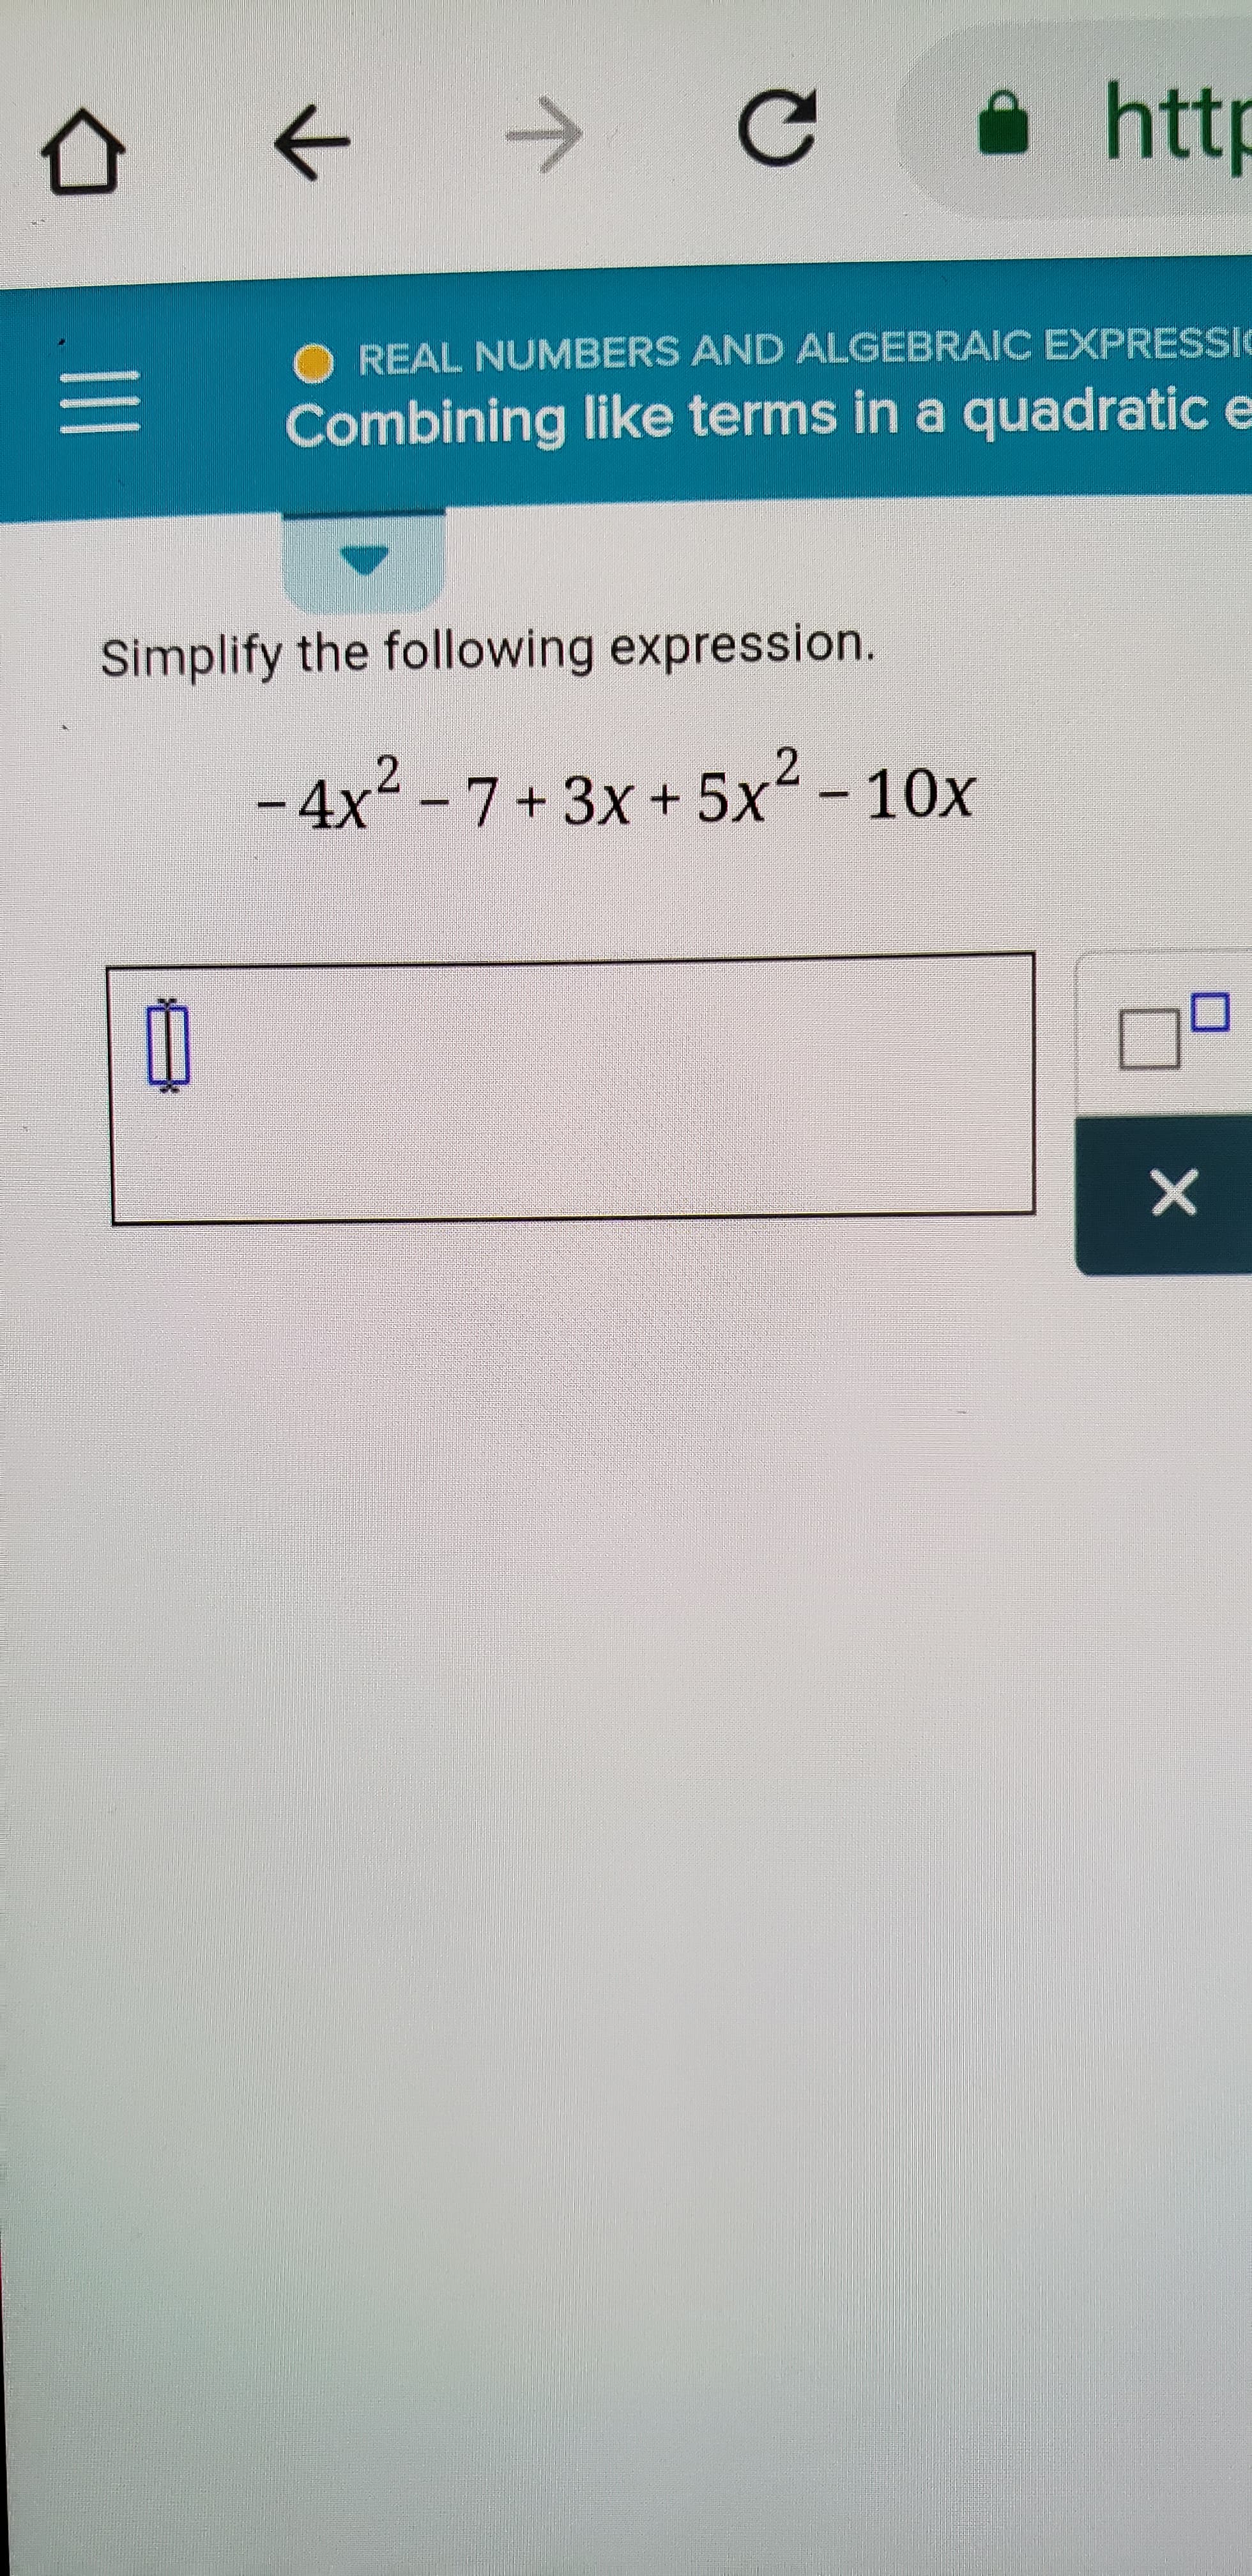 公←→
-O REAL NUMBERS AND ALGEBRAIC EXPRESSİ
Combining like terms in a quadratic e
Simplify the following expression.
-4x2 -7+3x +5x2 -10x
